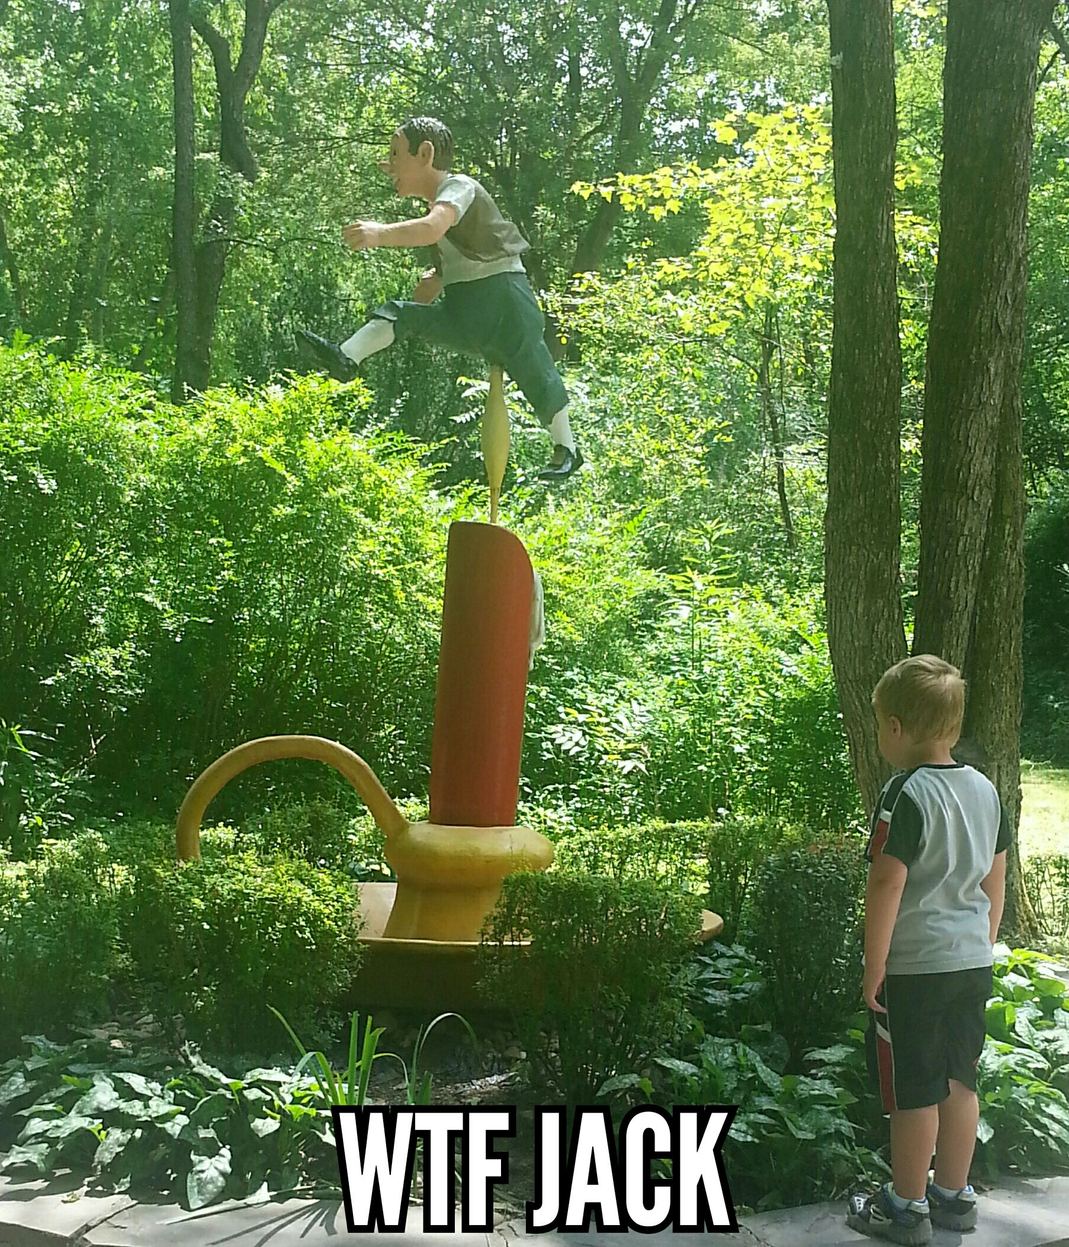 Jack jump over the uhhh.. - meme